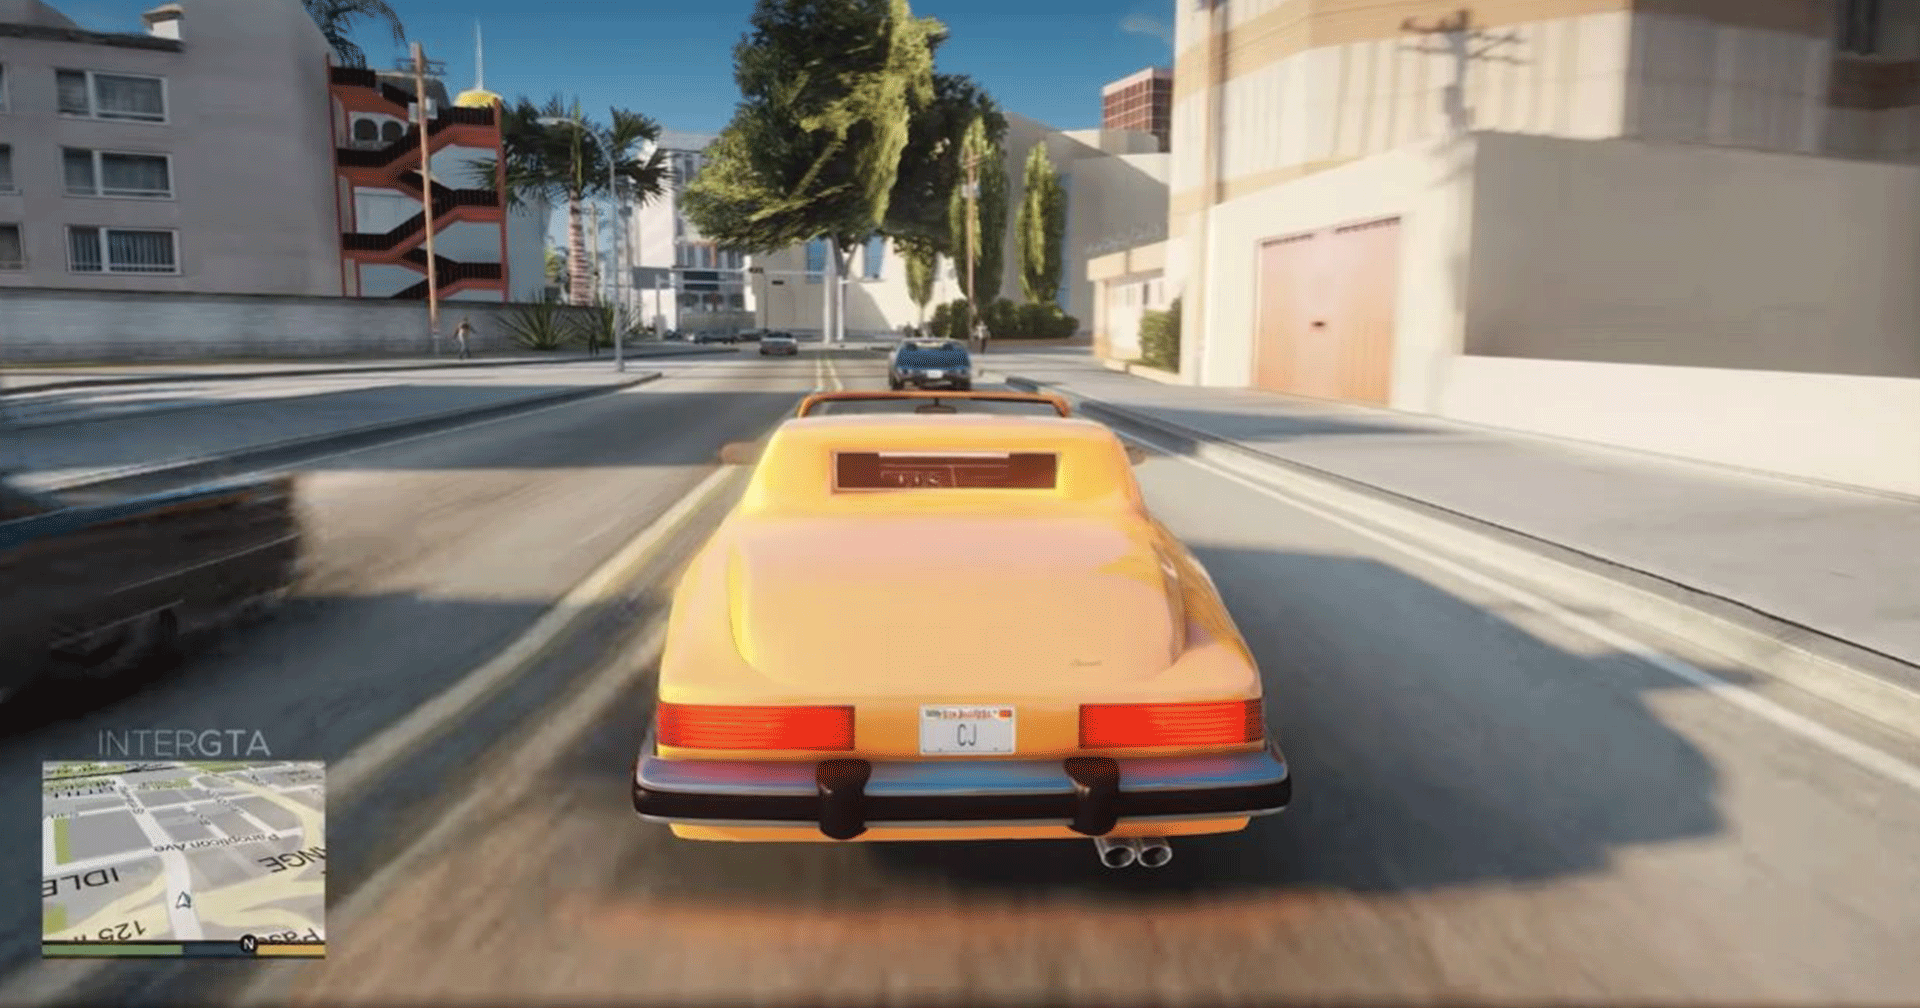 เผยวิดีโอ GTA Vice City และ San Andreas บน Engine ของ GTA V ด้วย Mod ที่ถูกสั่งแบนโดย Take-Two